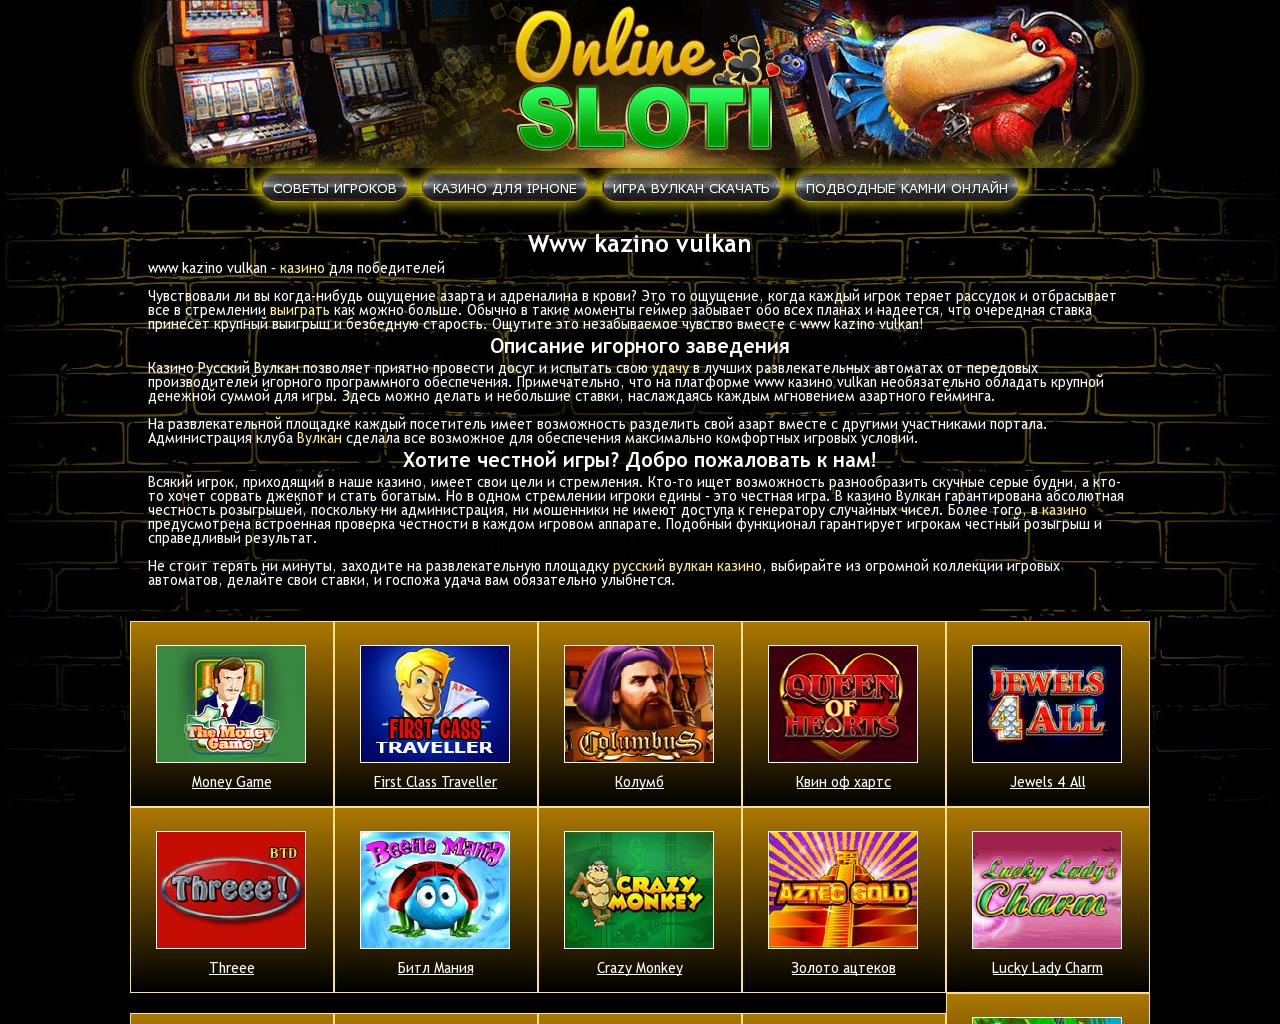 Игра в казино онлайн на деньги отзывы форум ограбление в казино гта онлайн